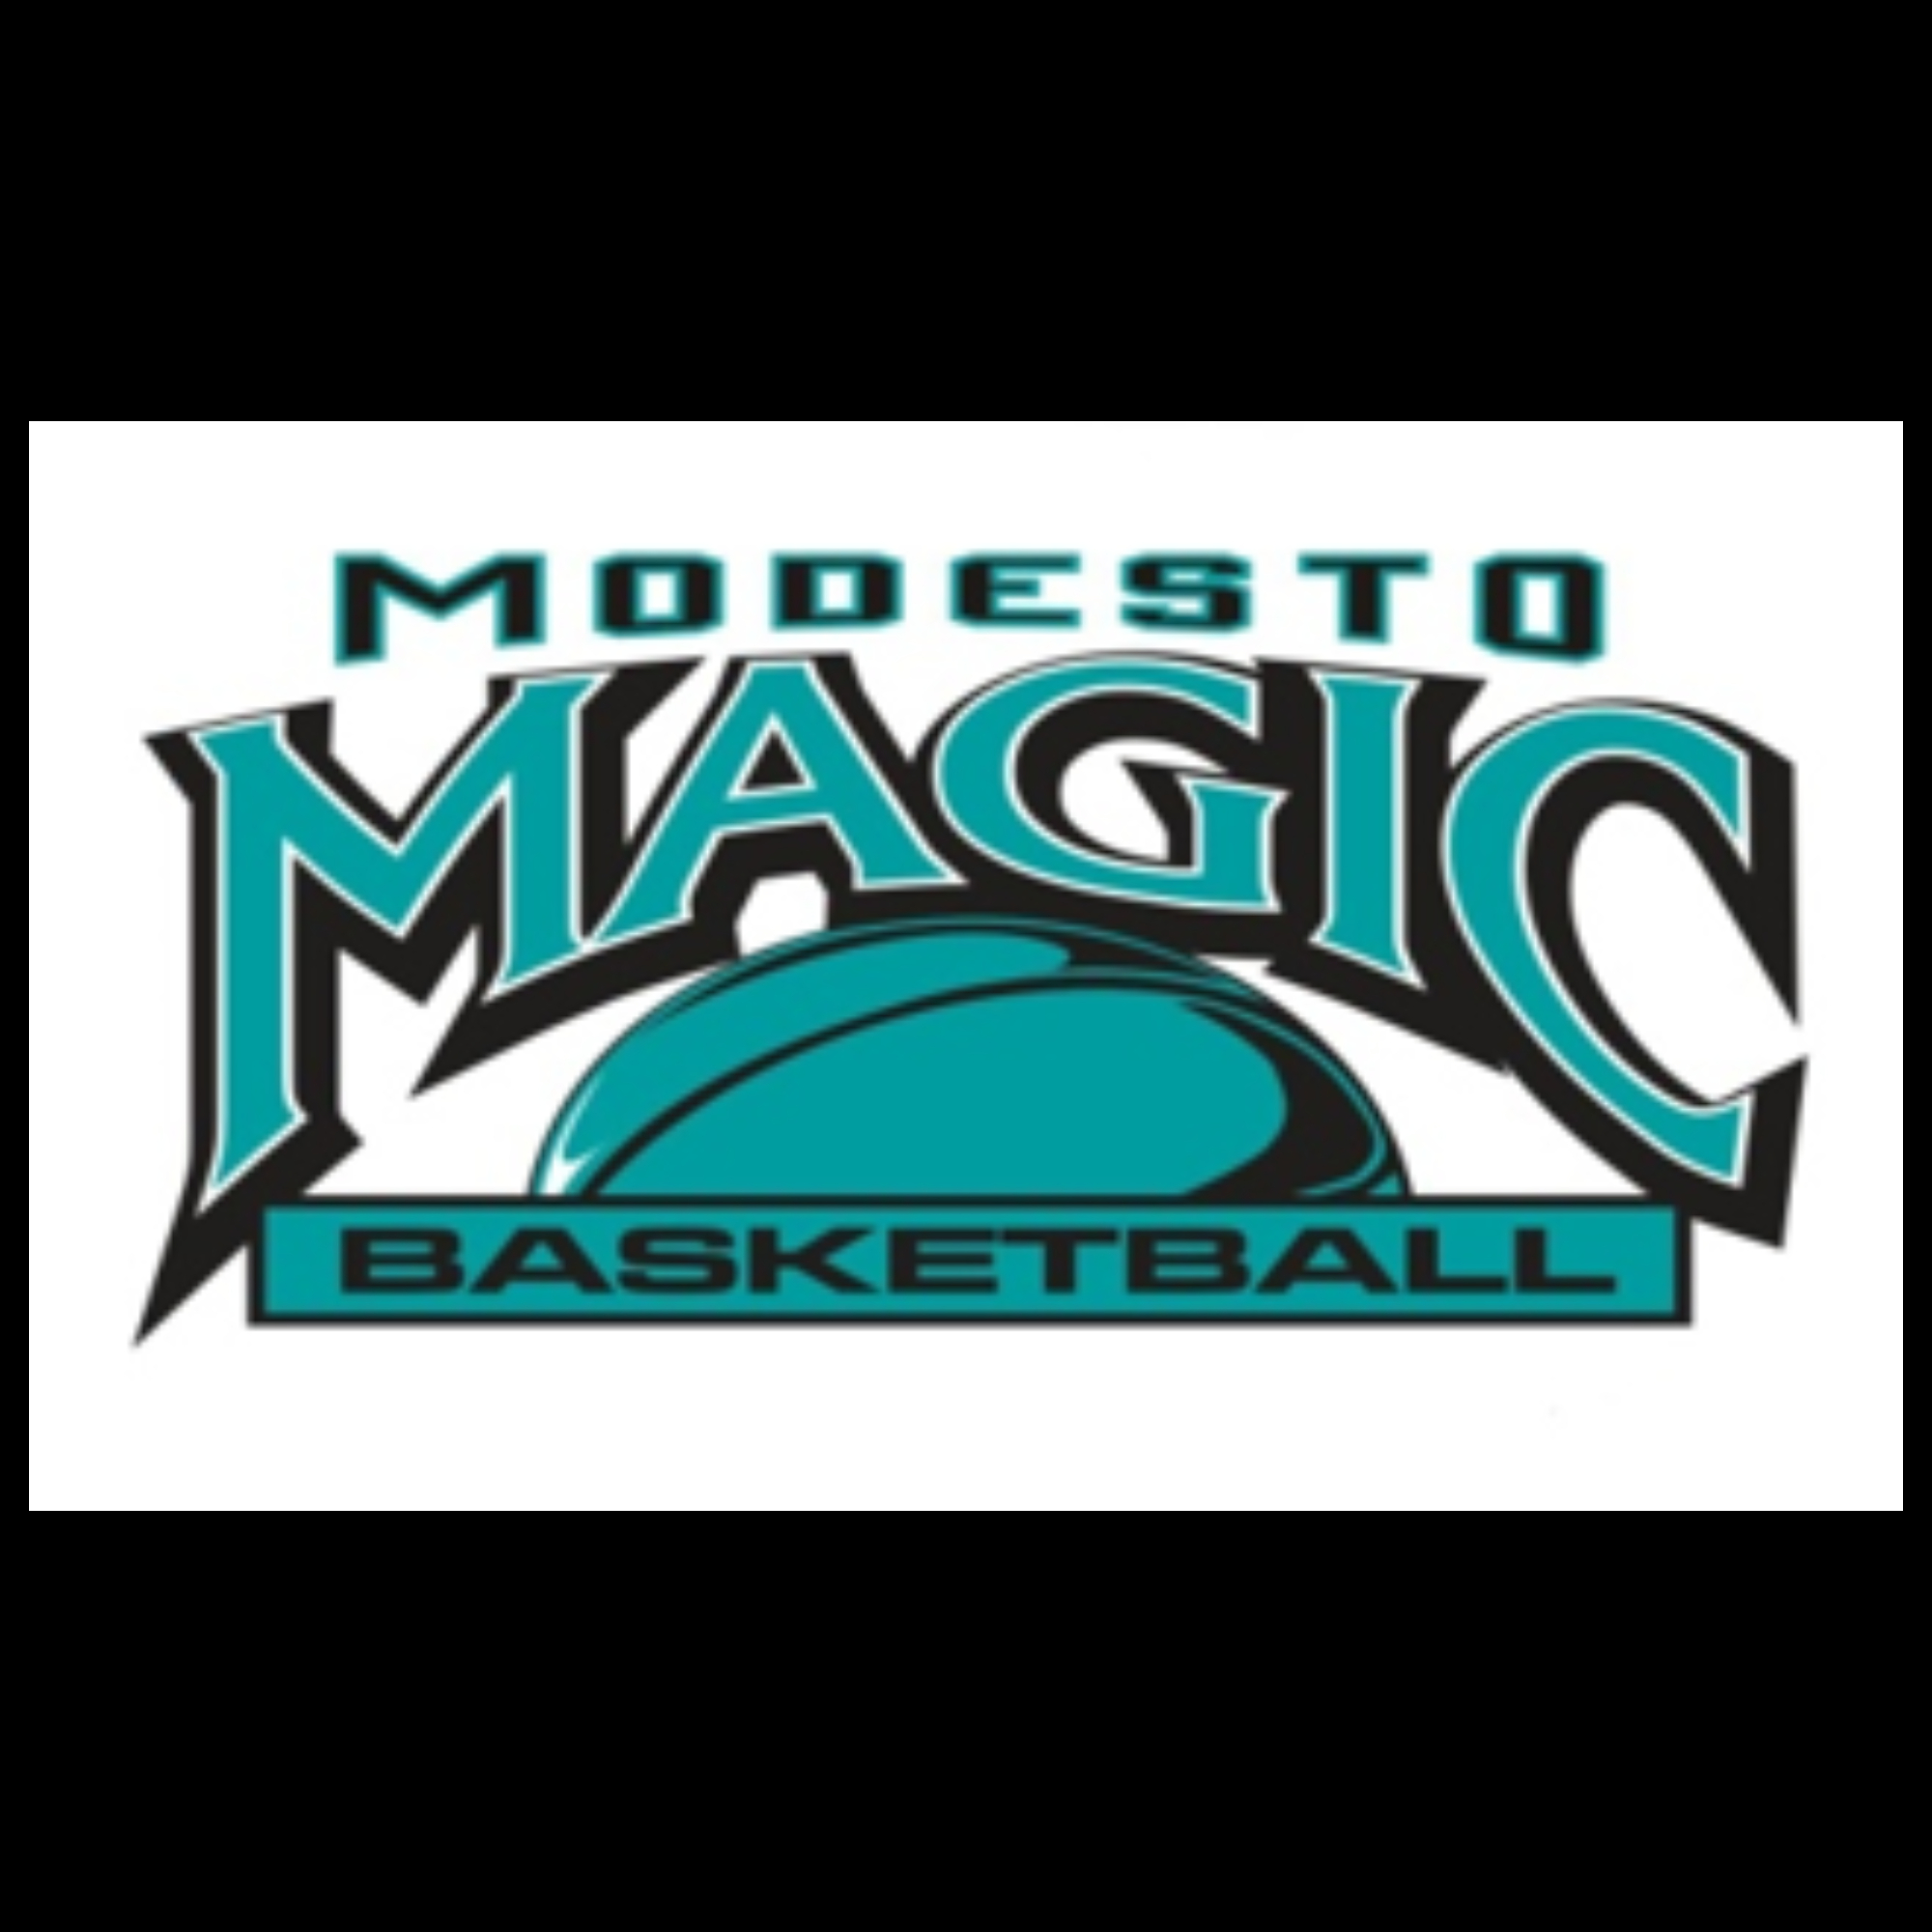 The official logo of Modesto Magic Basketball